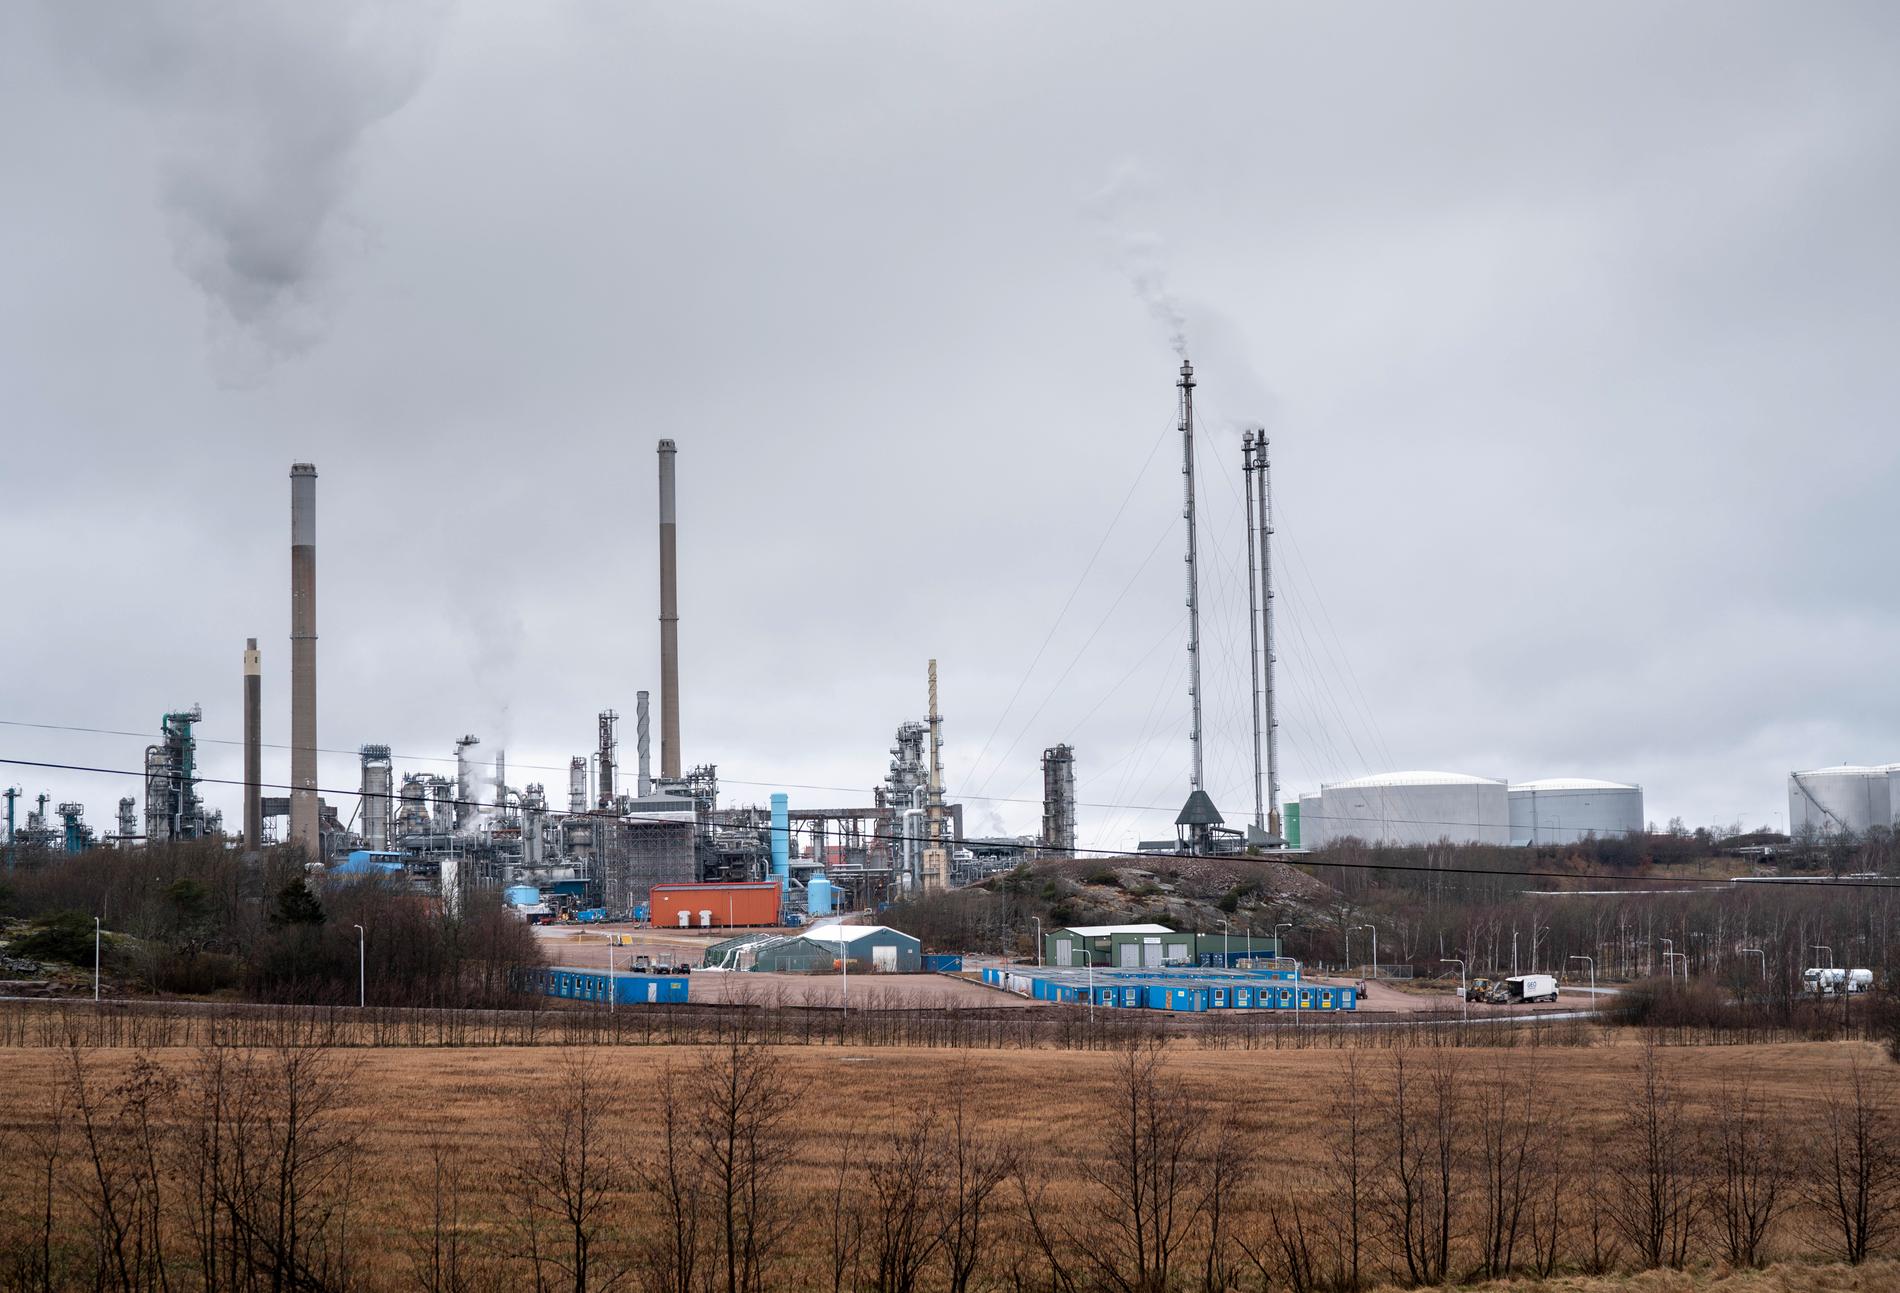 Preemraff i Lysekil är Skandinaviens största raffinaderi. Preem har omkring 600 anställda vid anläggningen.